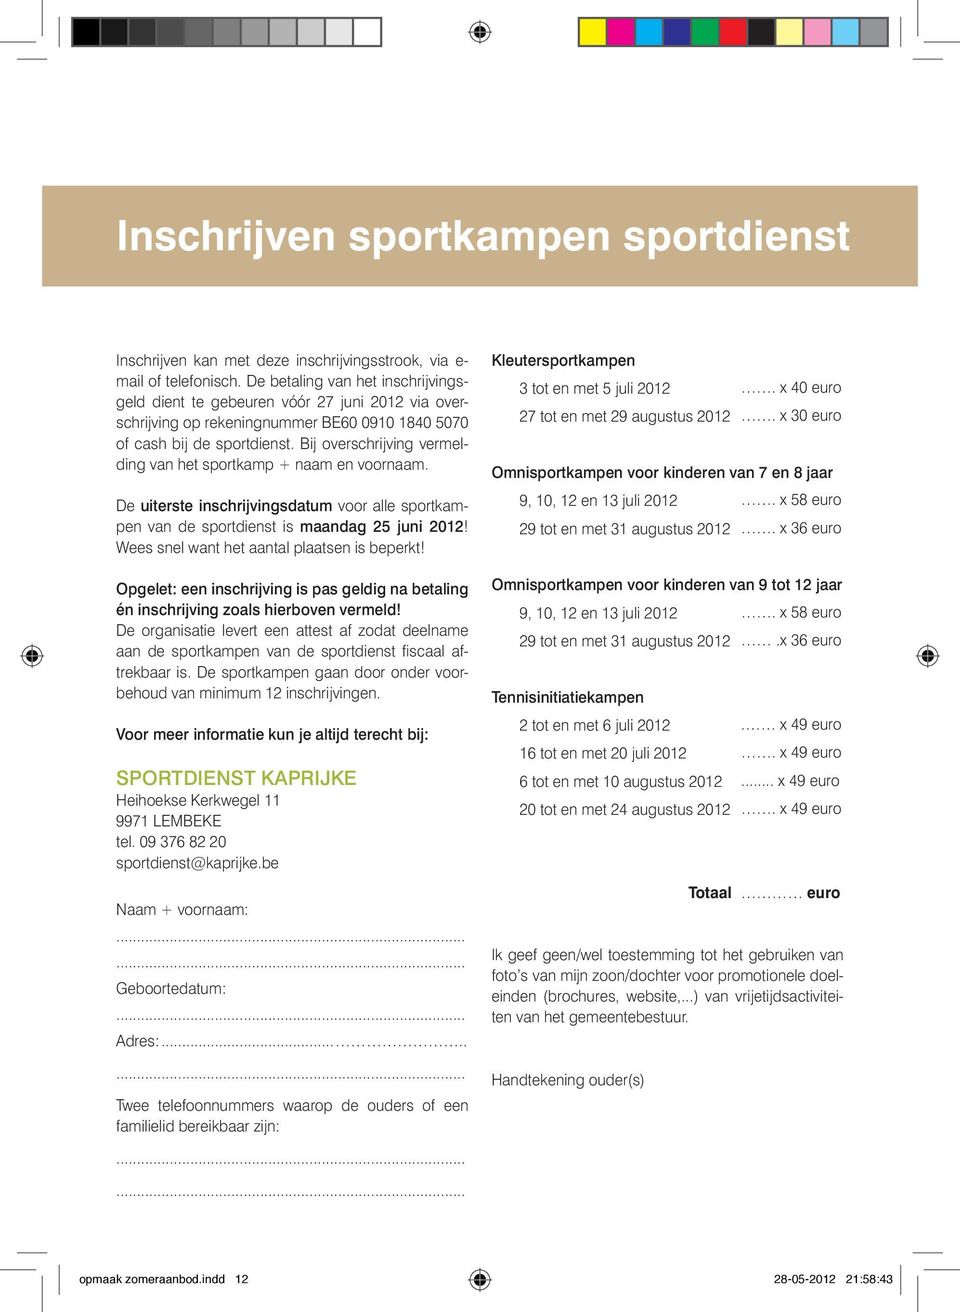 Bij overschrijving vermelding van het sportkamp + naam en voornaam. De uiterste inschrijvingsdatum voor alle sportkampen van de sportdienst is maandag 25 juni 2012!